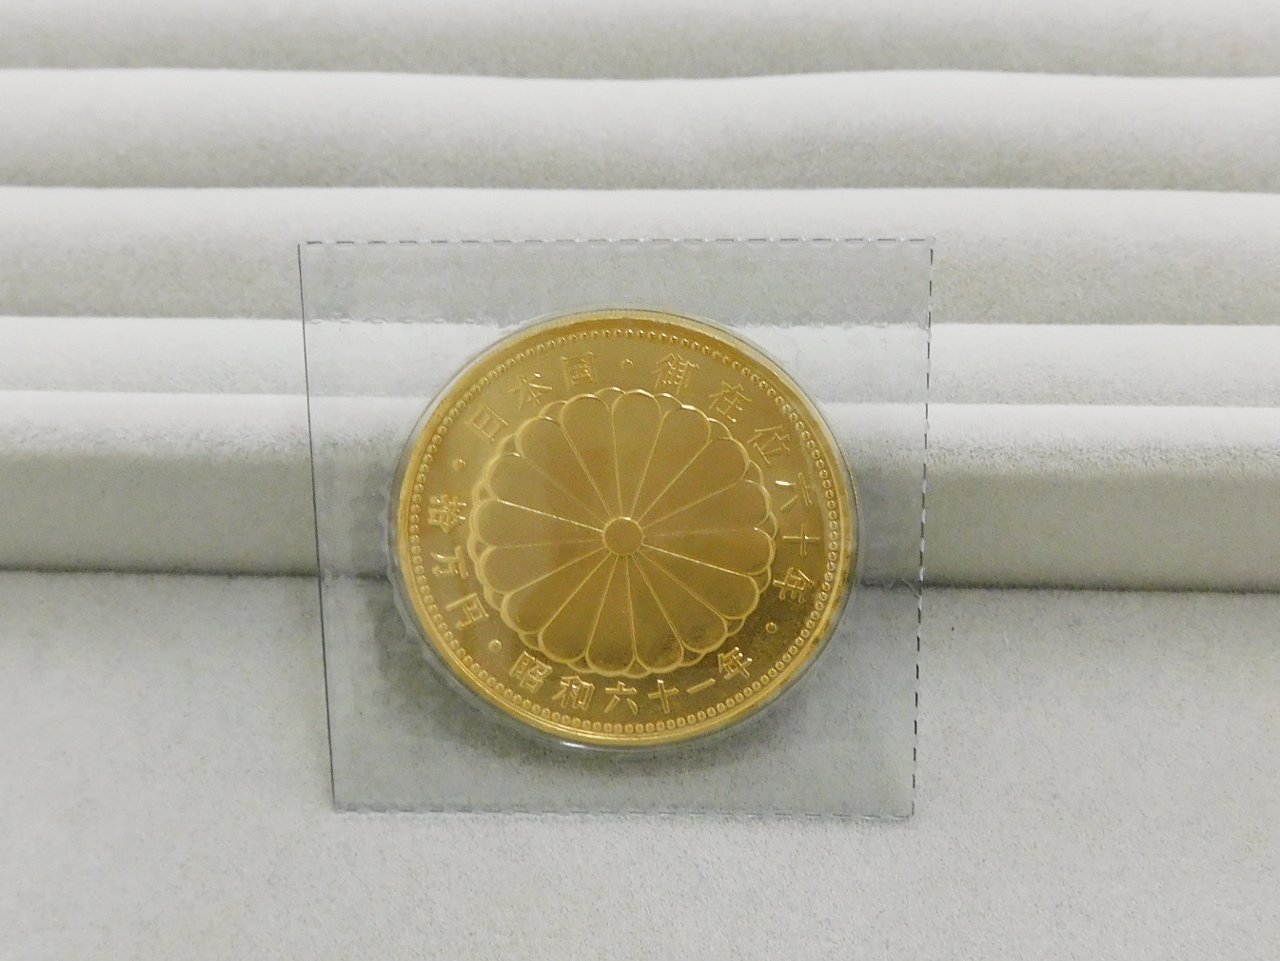 平成2年 天皇陛下御即位60年記念 10万円金貨シリアルナンバー - 旧貨幣 